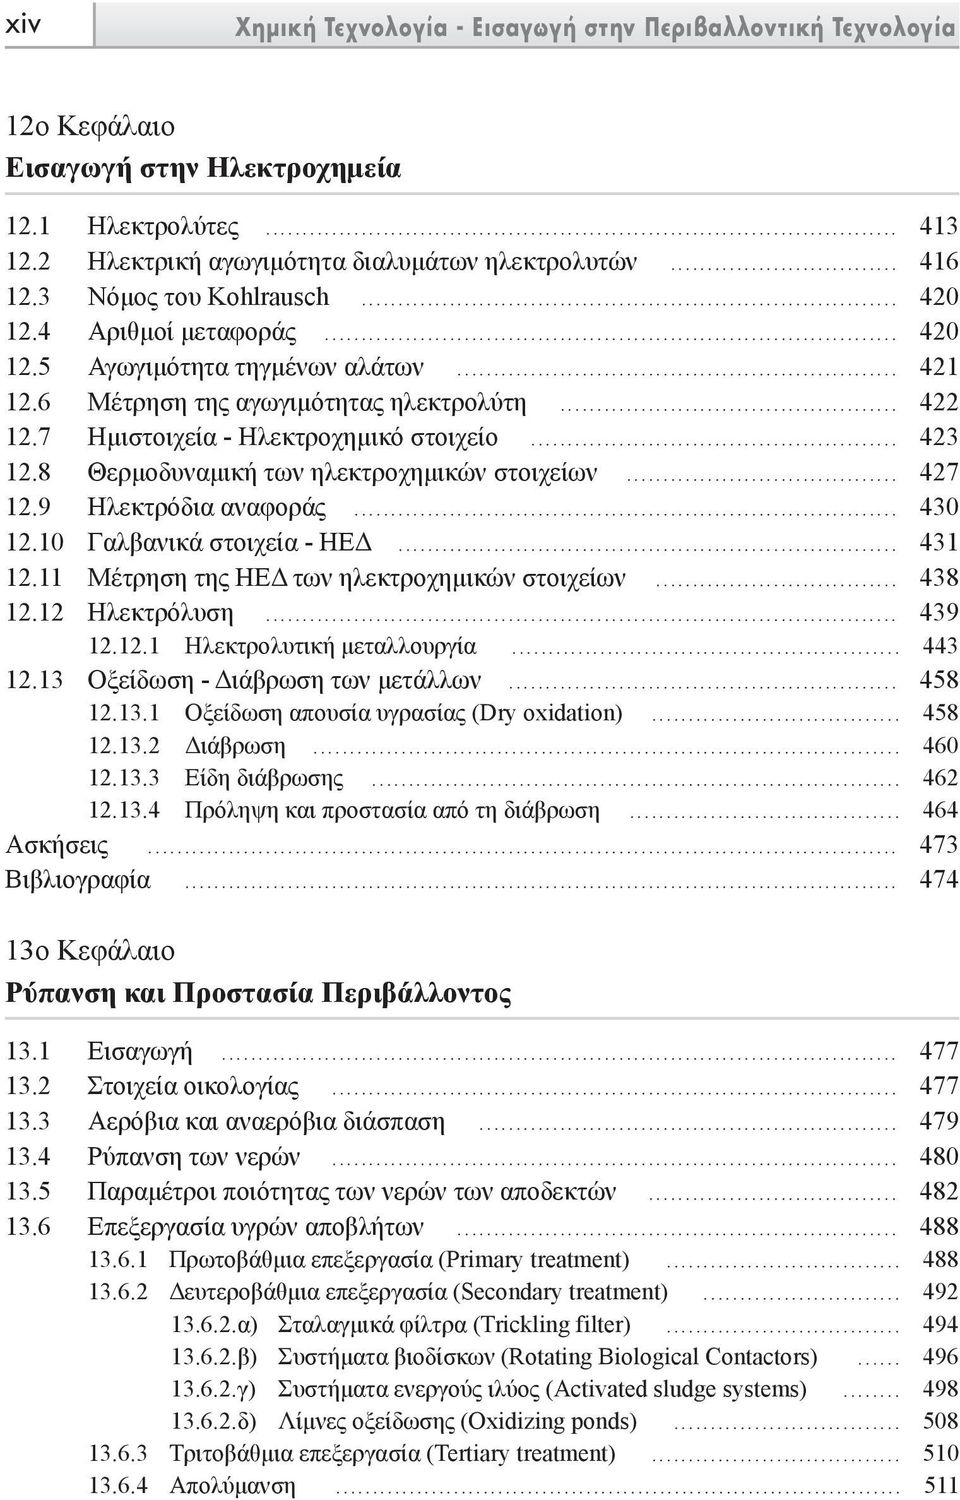 8 Θερµοδυναµική των ηλεκτροχηµικών στοιχείων... 427 12.9 Ηλεκτρόδια αναφοράς... 430 12.10 Γαλβανικά στοιχεία - ΗΕ... 431 12.11 Μέτρηση της ΗΕ των ηλεκτροχηµικών στοιχείων... 438 12.12 Ηλεκτρόλυση.